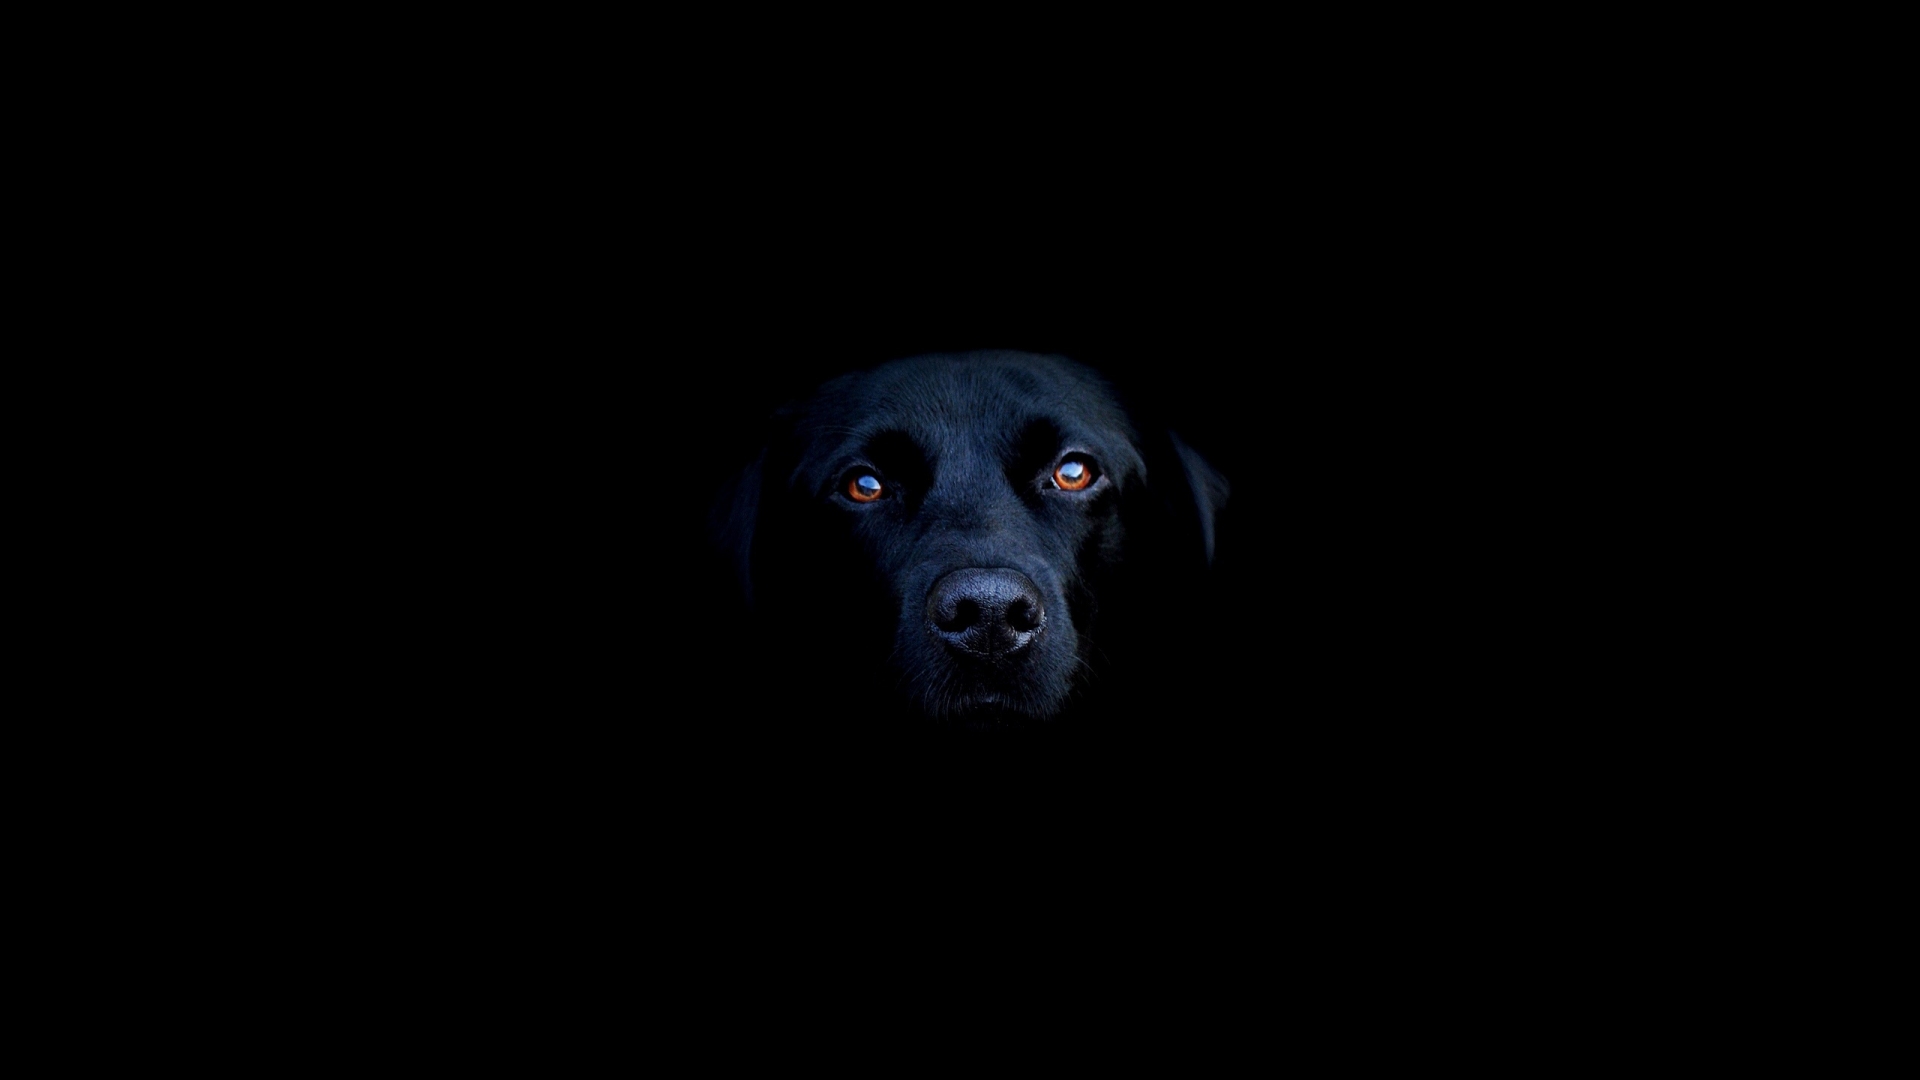 Black dog for 1920 x 1080 HDTV 1080p resolution